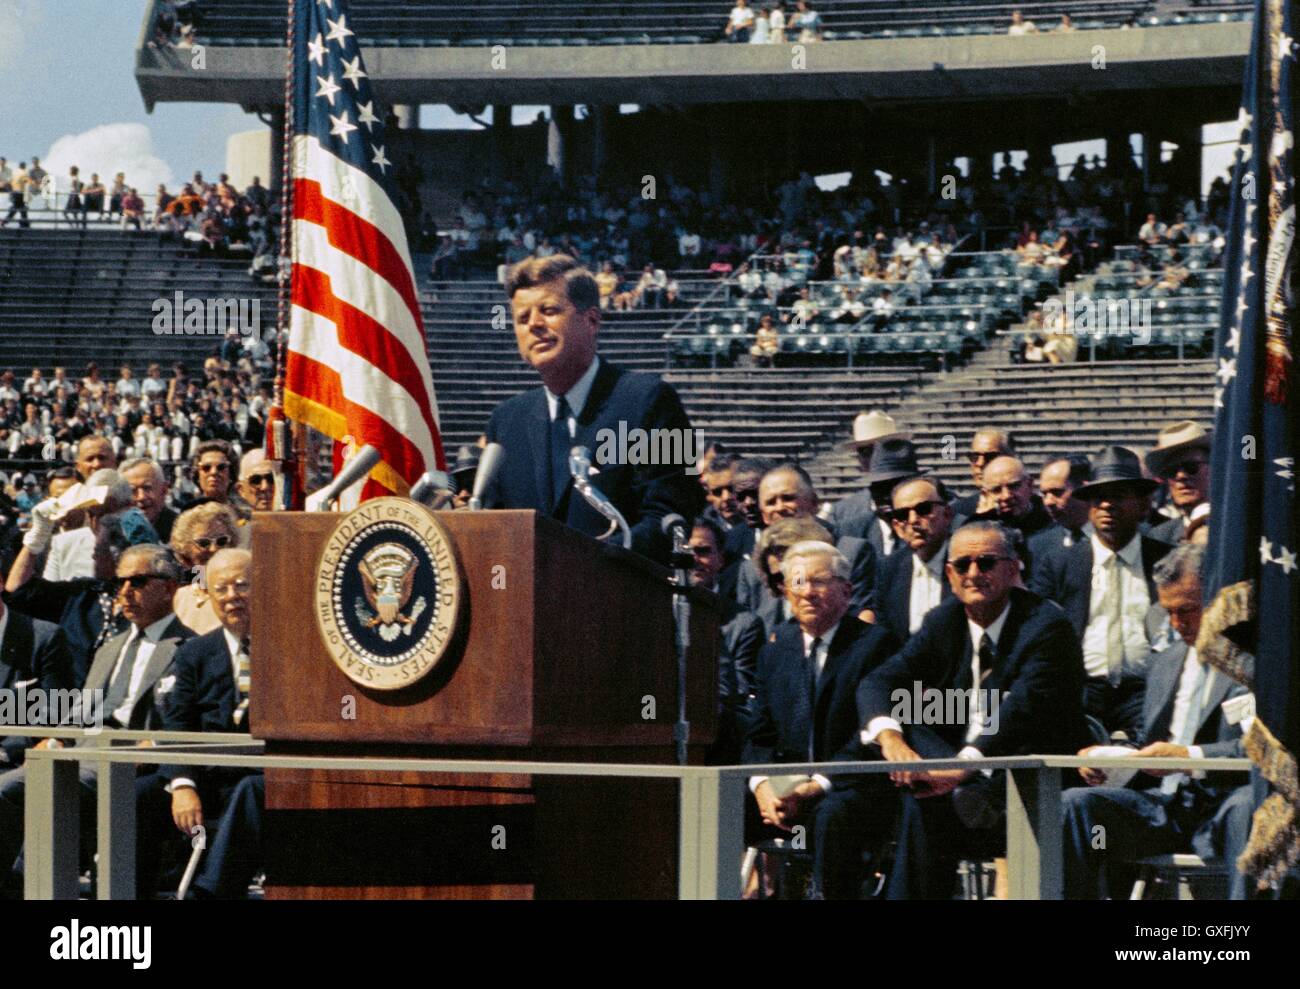 Le président américain John F. Kennedy livre son célèbre discours sur l'exploration spatiale et l'effort des Nations unies à la terre sur la lune lors d'une allocution à l'Université Rice Stadium le 12 septembre 1962 à Houston, Texas. Banque D'Images